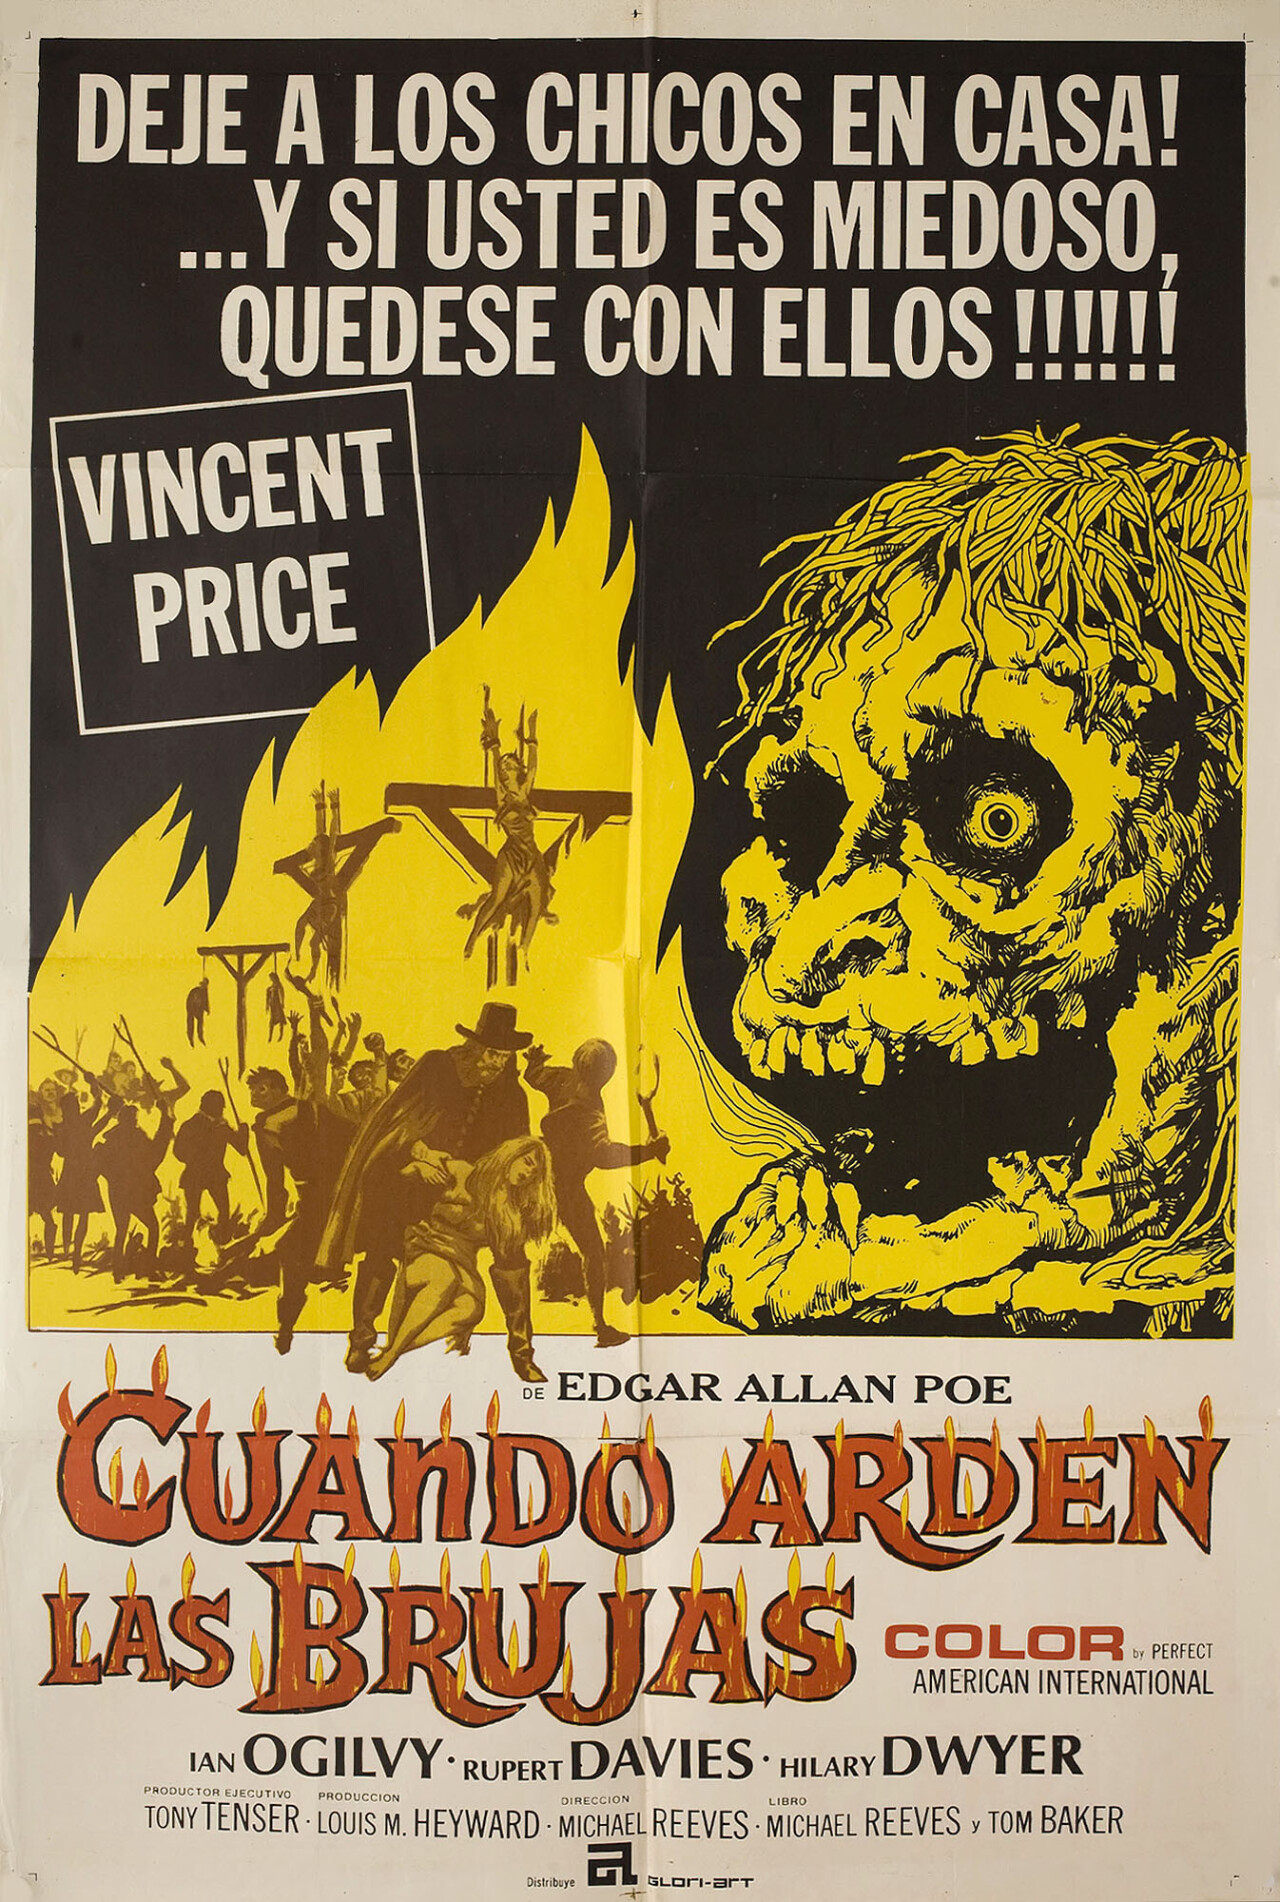 Червь-завоеватель (The Conqueror Worm, 1968), режиссёр Майкл Ривз, аргентинский постер к фильму (ужасы, 1968 год)